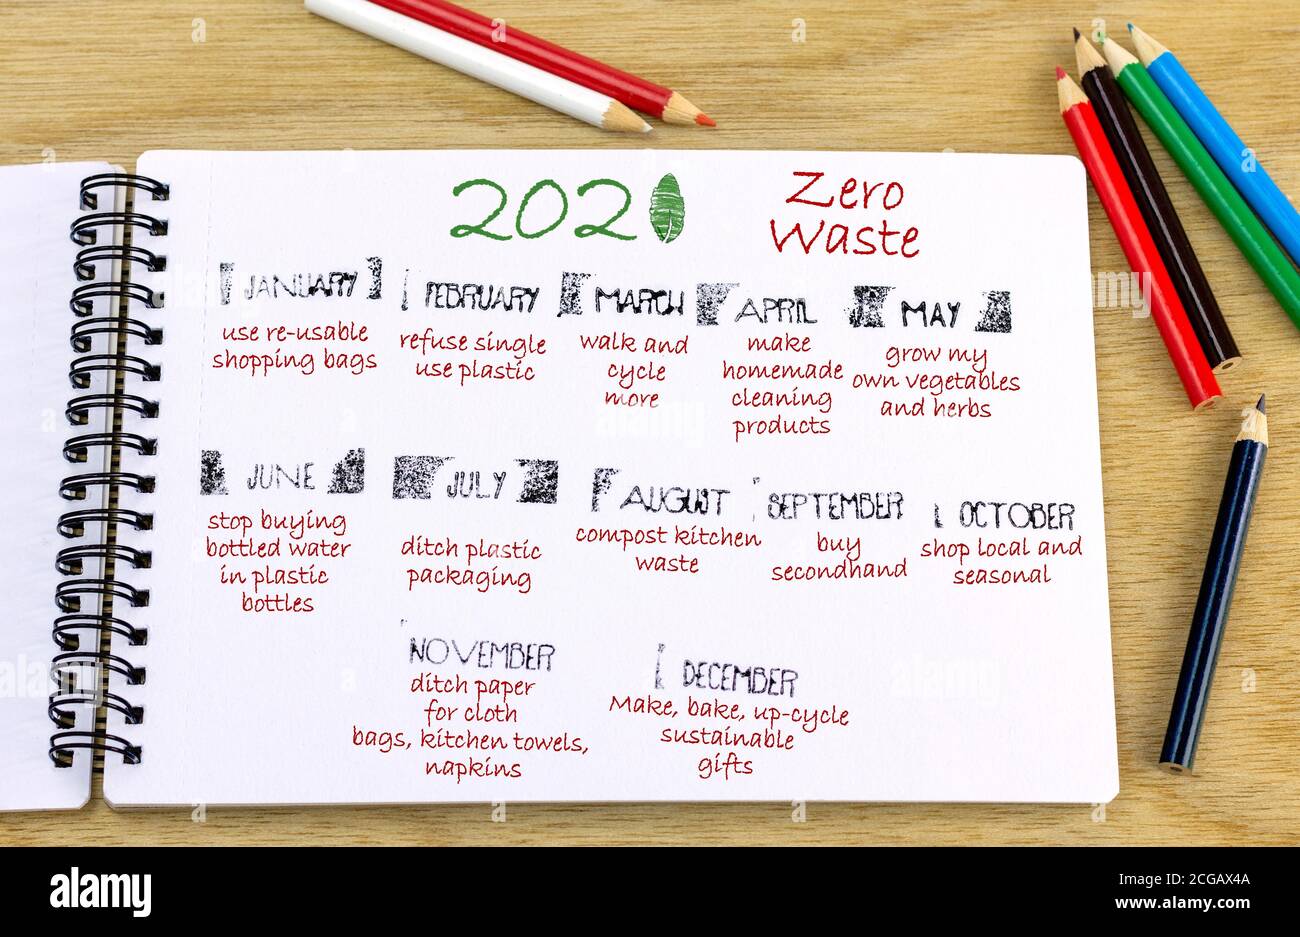 Zero Waste 2021 Heading con ideas respetuosas con el medio ambiente para cada mes calendario escrito en la revista. Concepto de aspiraciones ambientales de año nuevo. Foto de stock